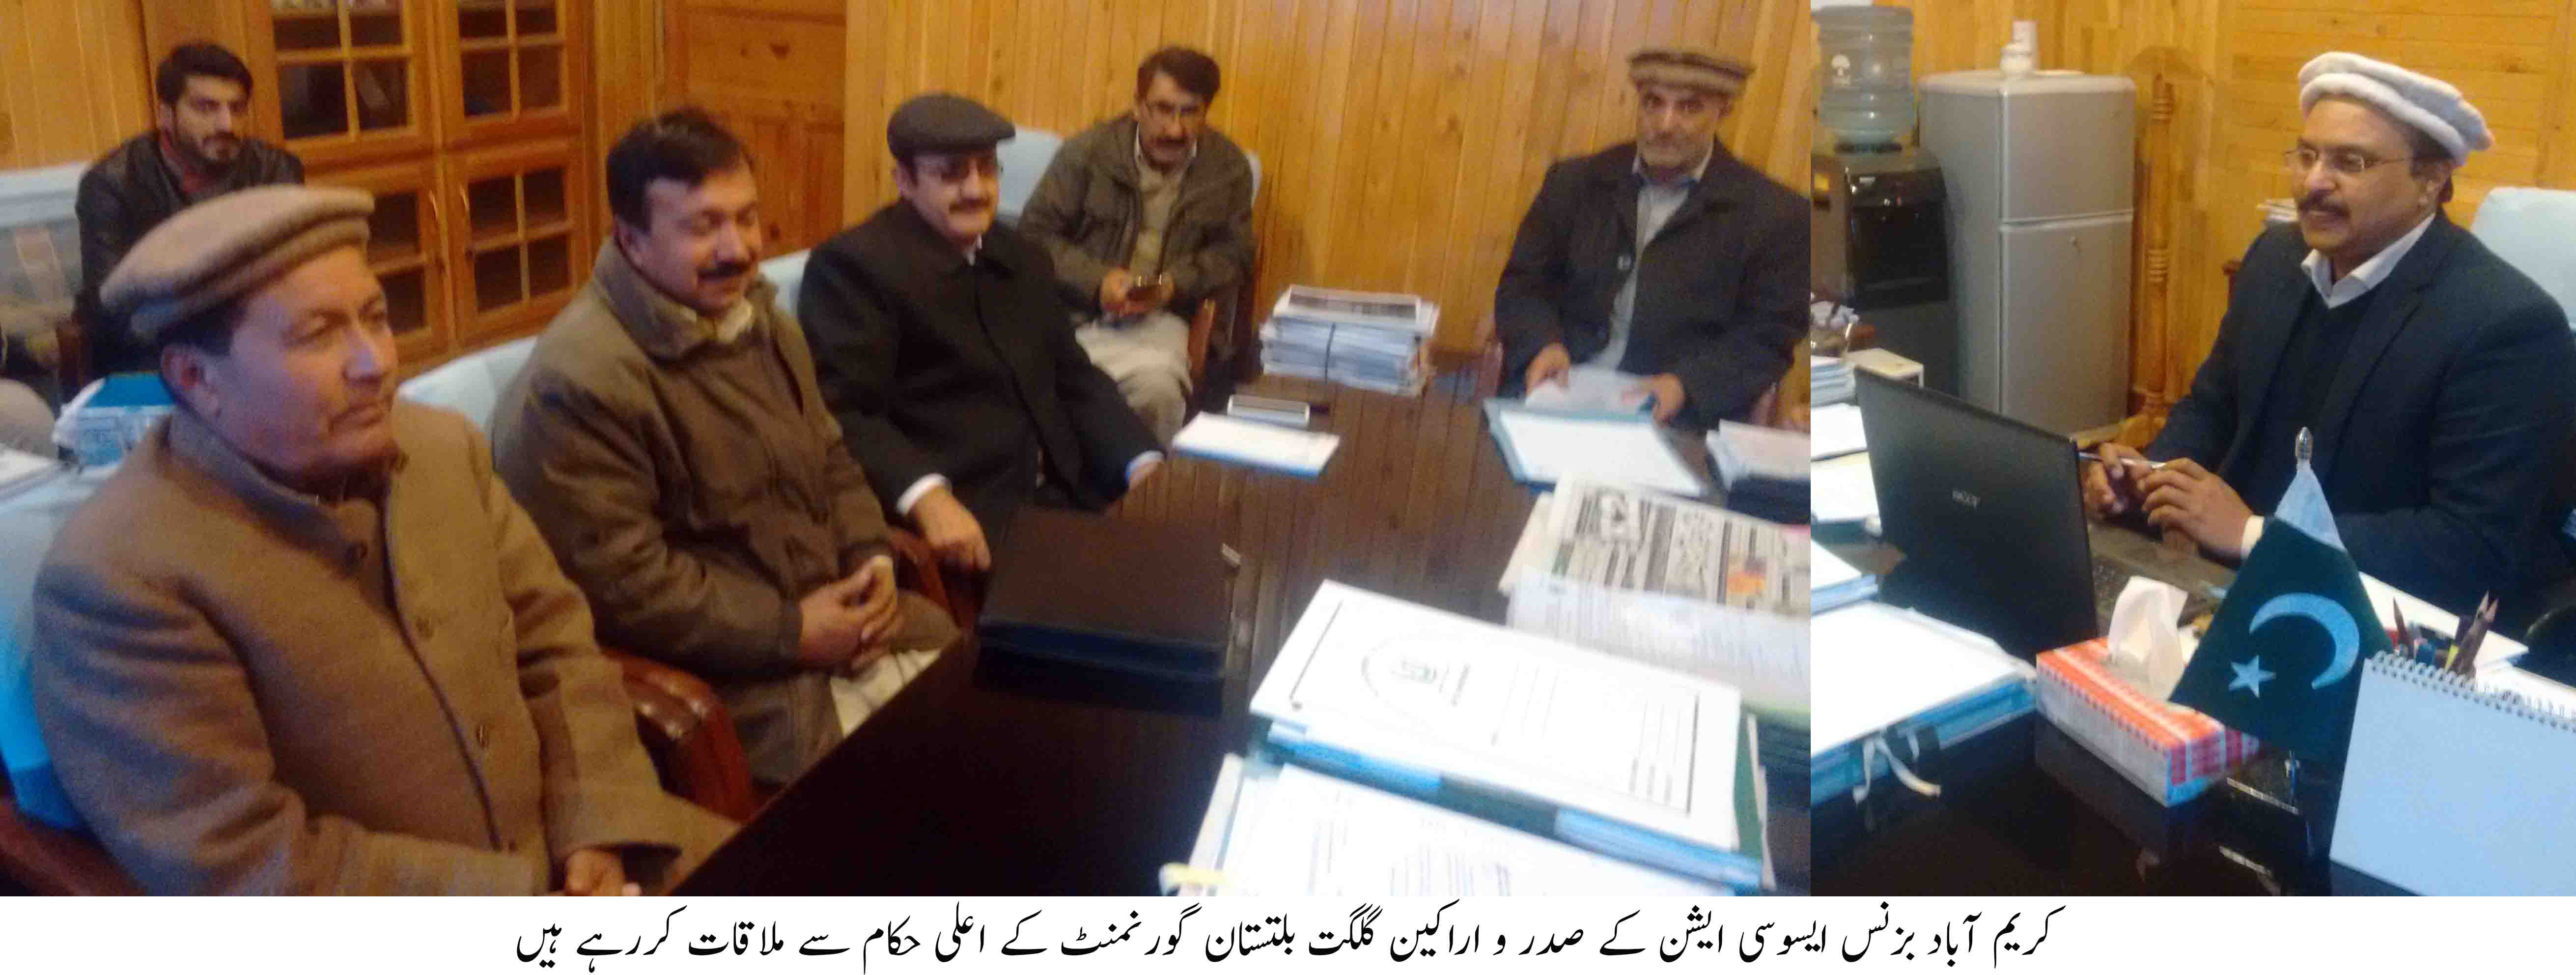 کریم آباد بزنس ایسوسی ایشن کے وفد کی مختلف محکموں کے سیکریٹریز سے ملاقات، مسائل حل کرنے کا مطالبہ